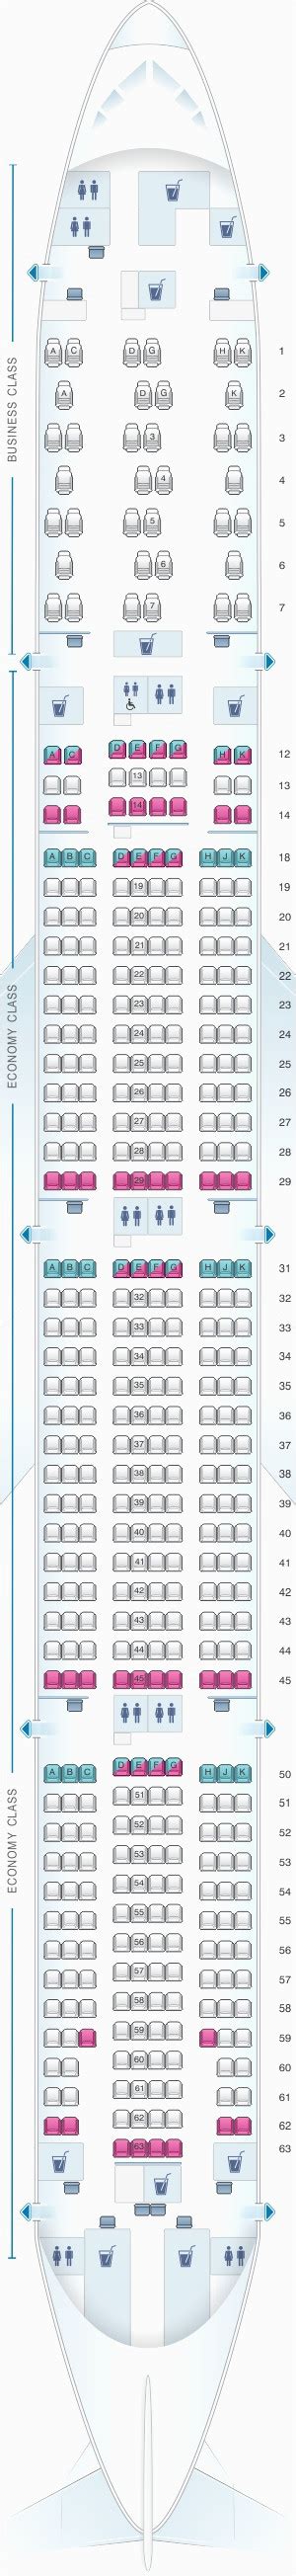 Air France 777 300er Business Class Seatguru Várias Classes